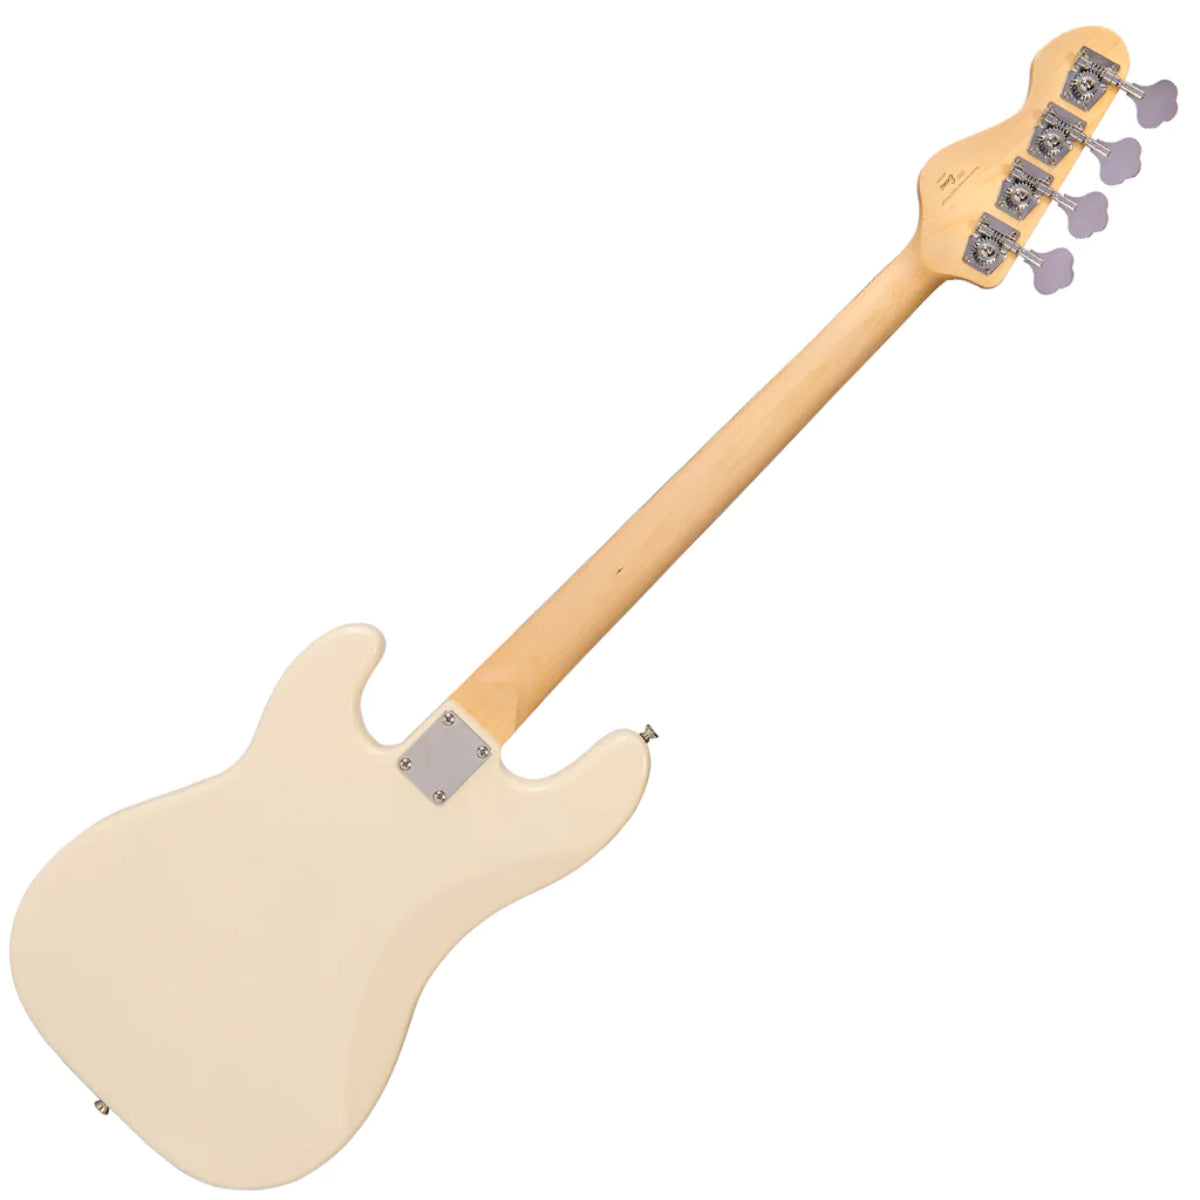 E4VW Encore Bass Guitar, Vintage White